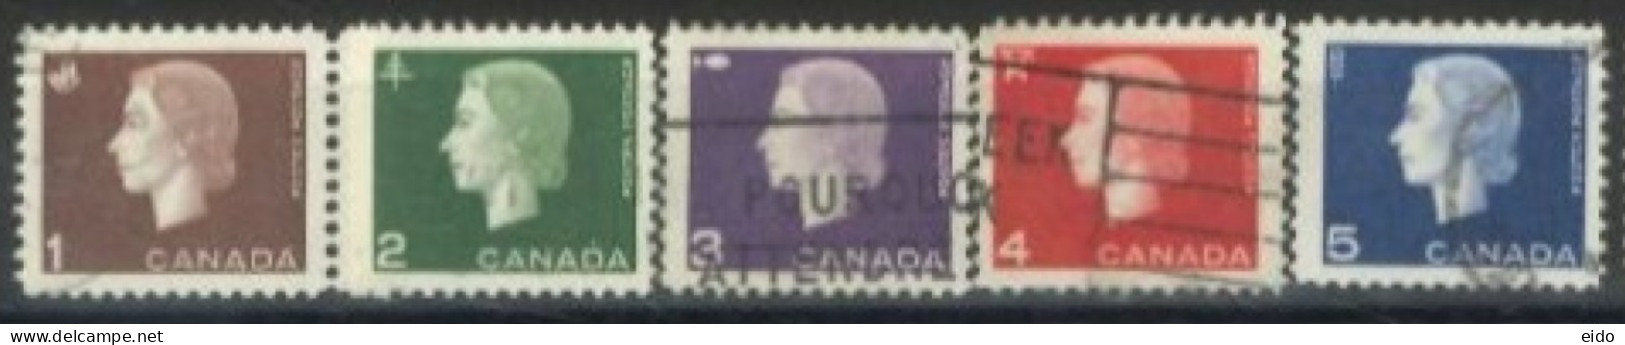 CANADA - 1962, QUEEN ELIZABETH II STAMPS & DIFFERENT SYMBOLS COMPLETE SET OF 5, USED. - Gebruikt